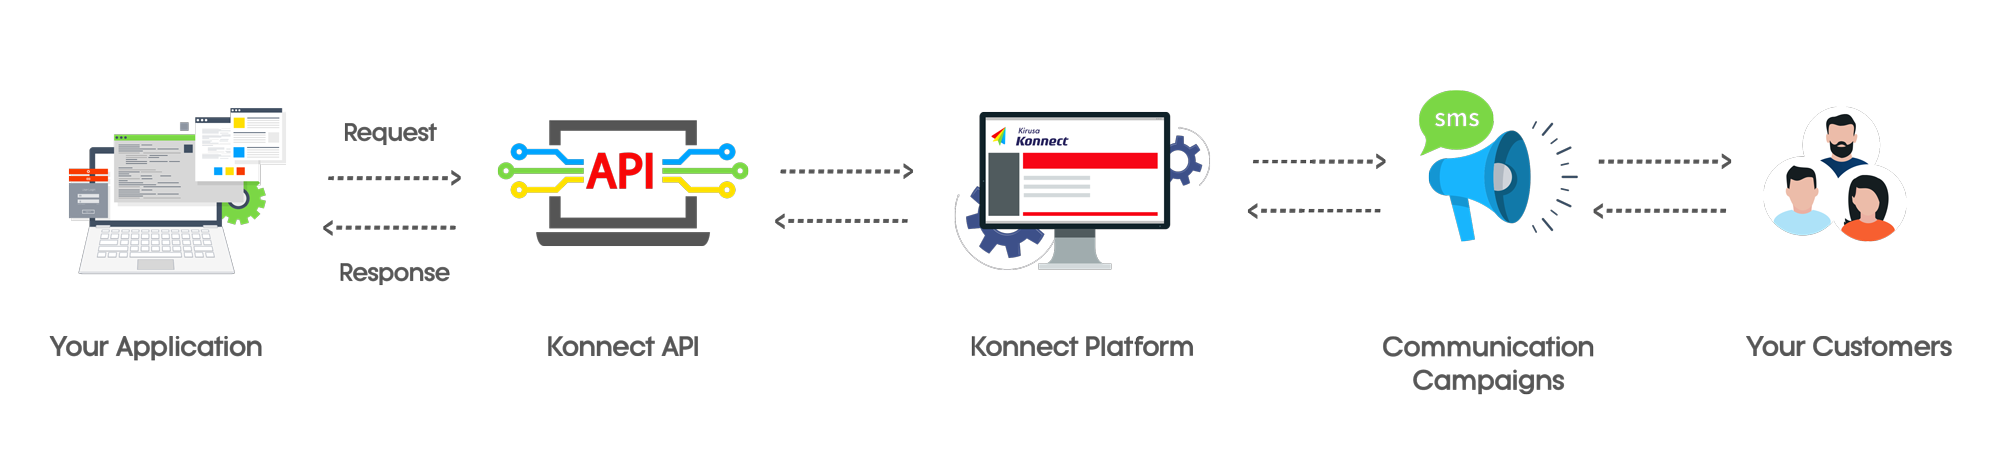 Konnect API